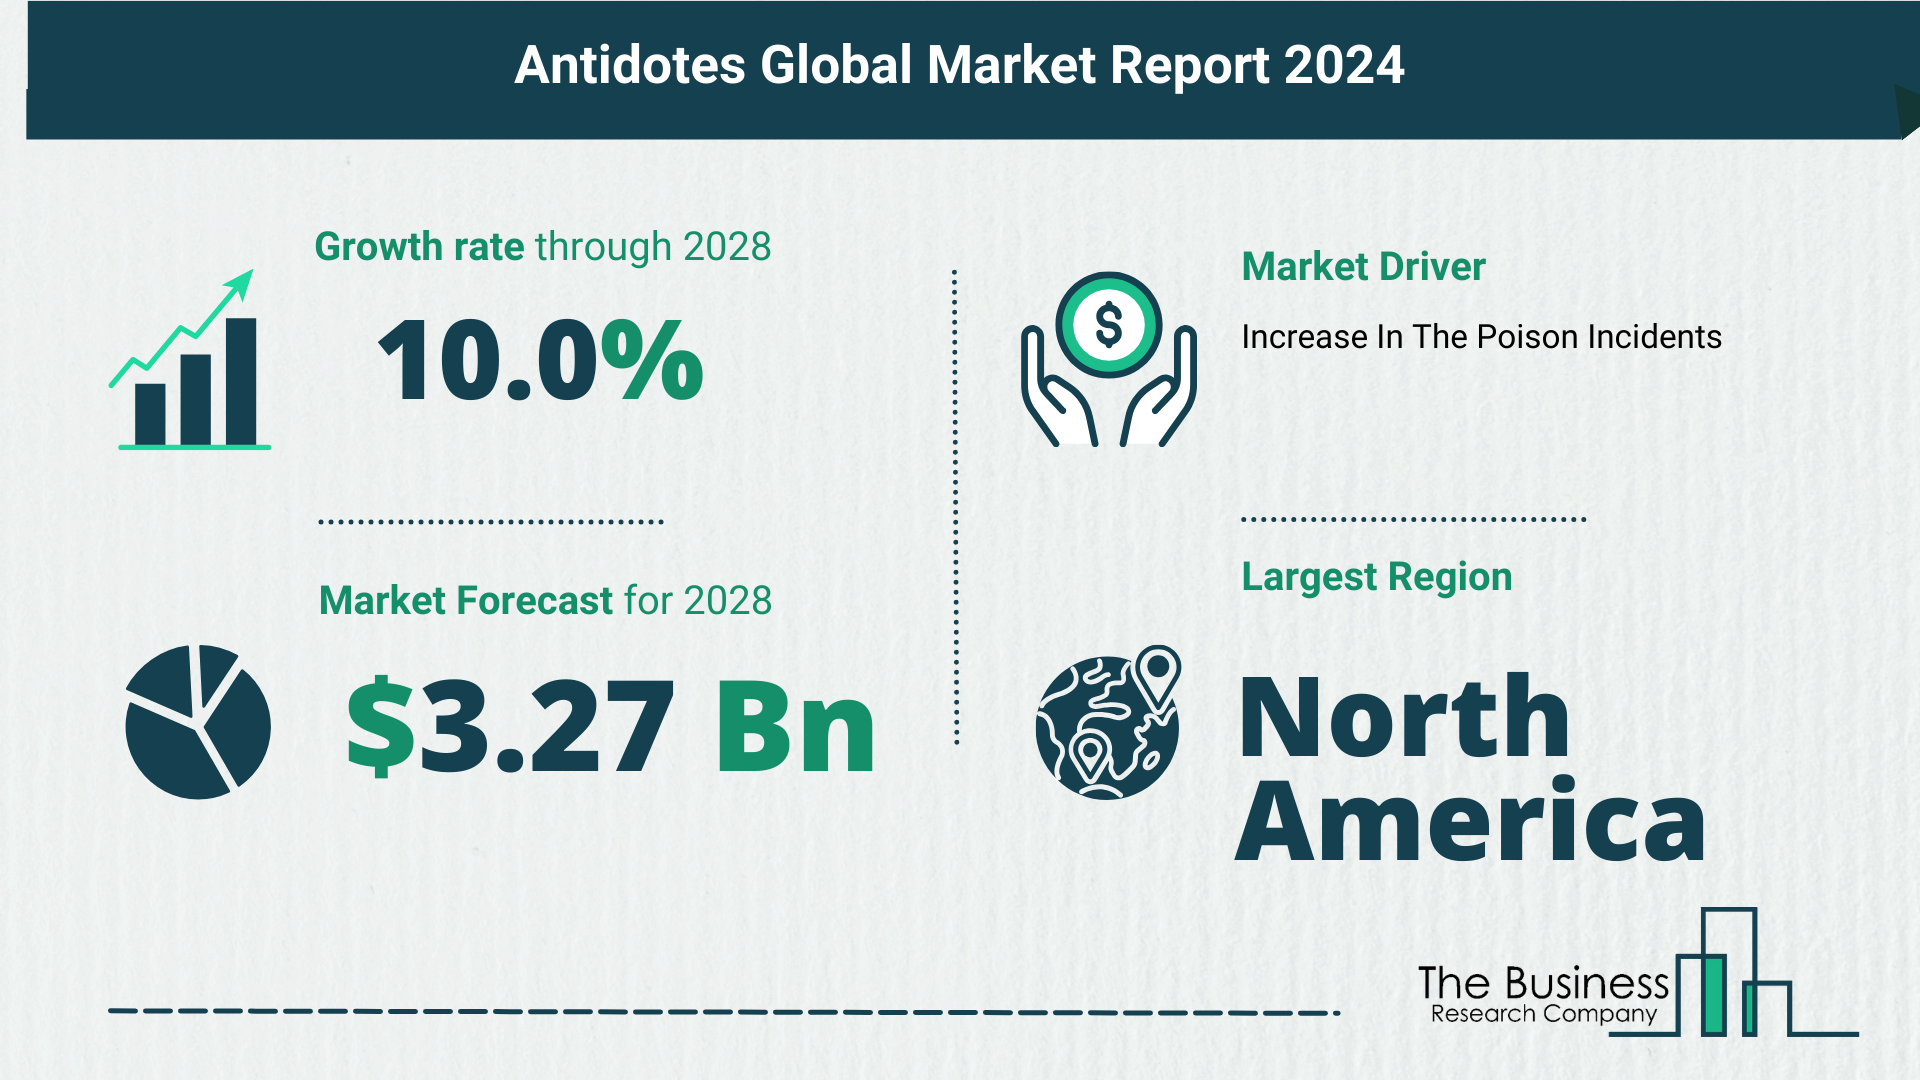 Global Antidotes Market